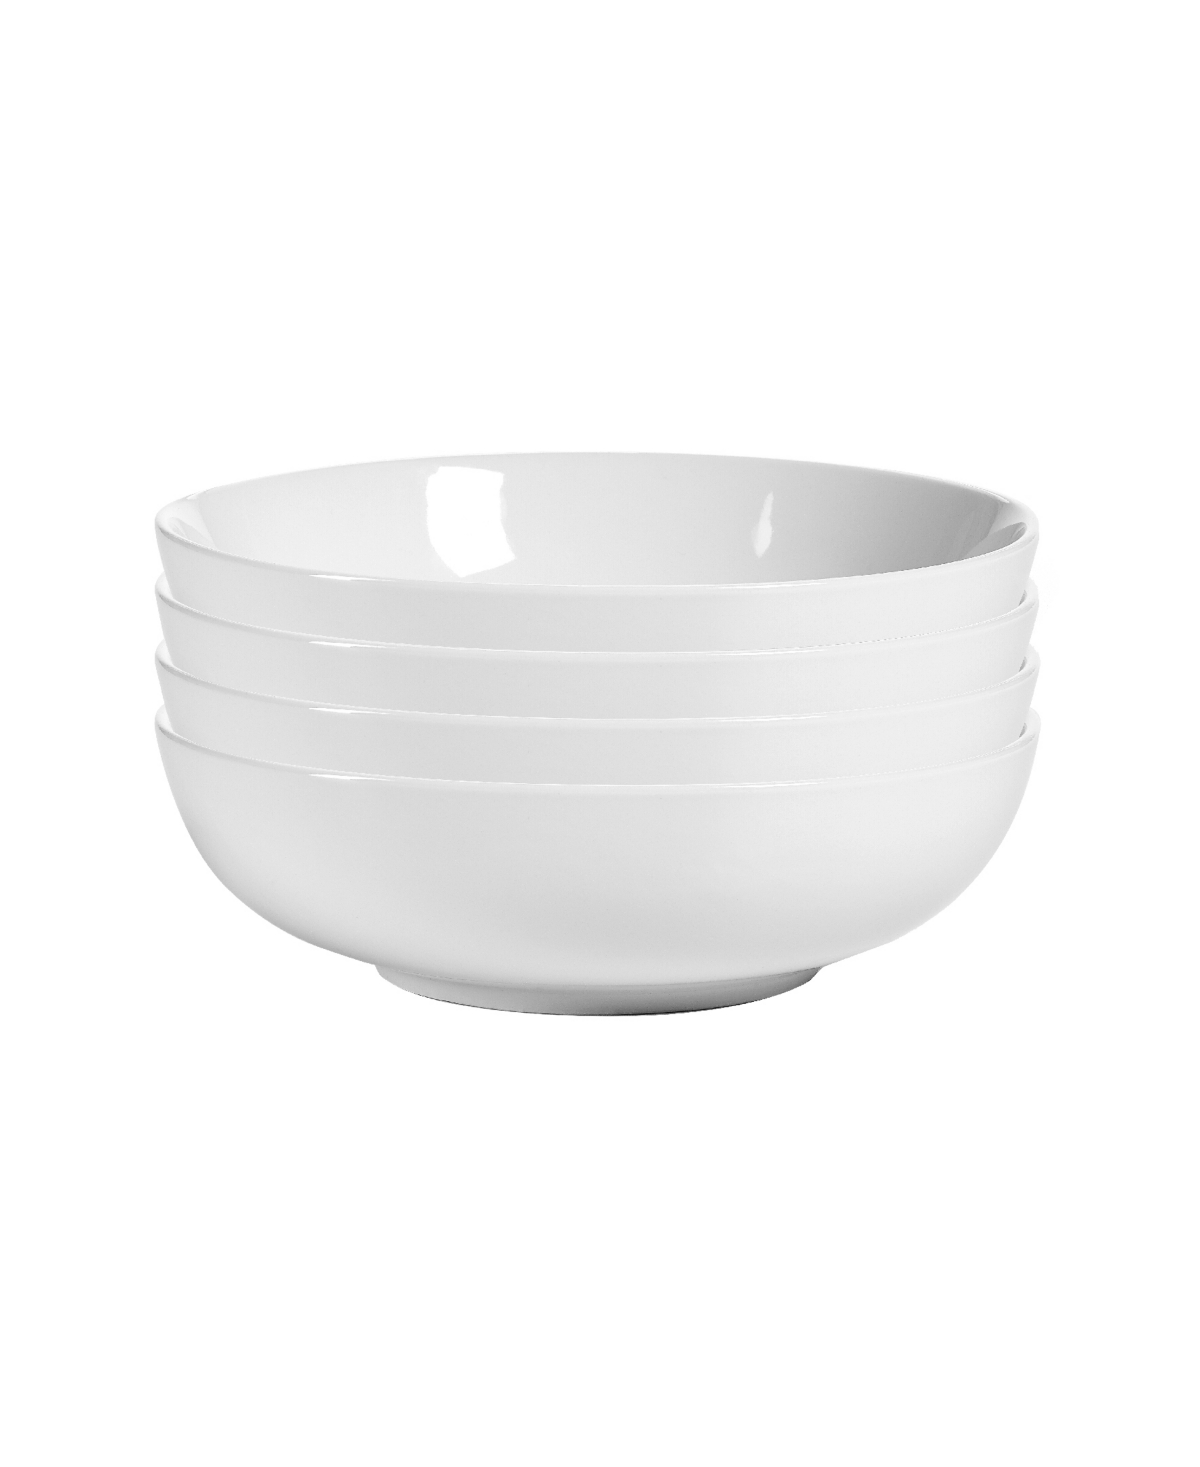 Delano Bowls - Set Of 4 - White